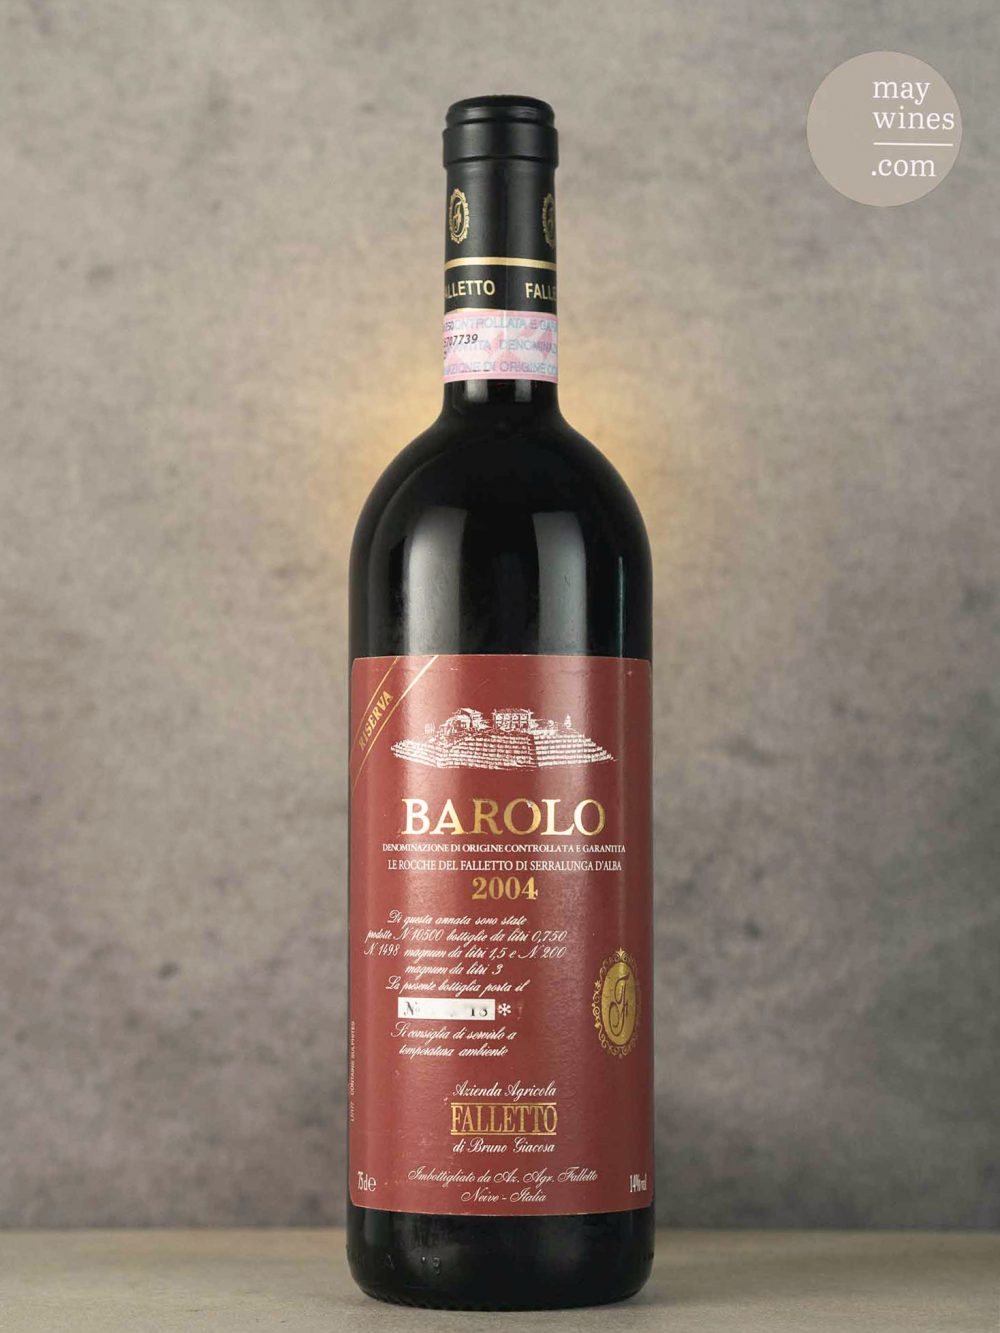 May Wines – Rotwein – 2004 Barolo Le Rocche del Falletto di Serralunga d’Alba Riserva - Bruno Giacosa